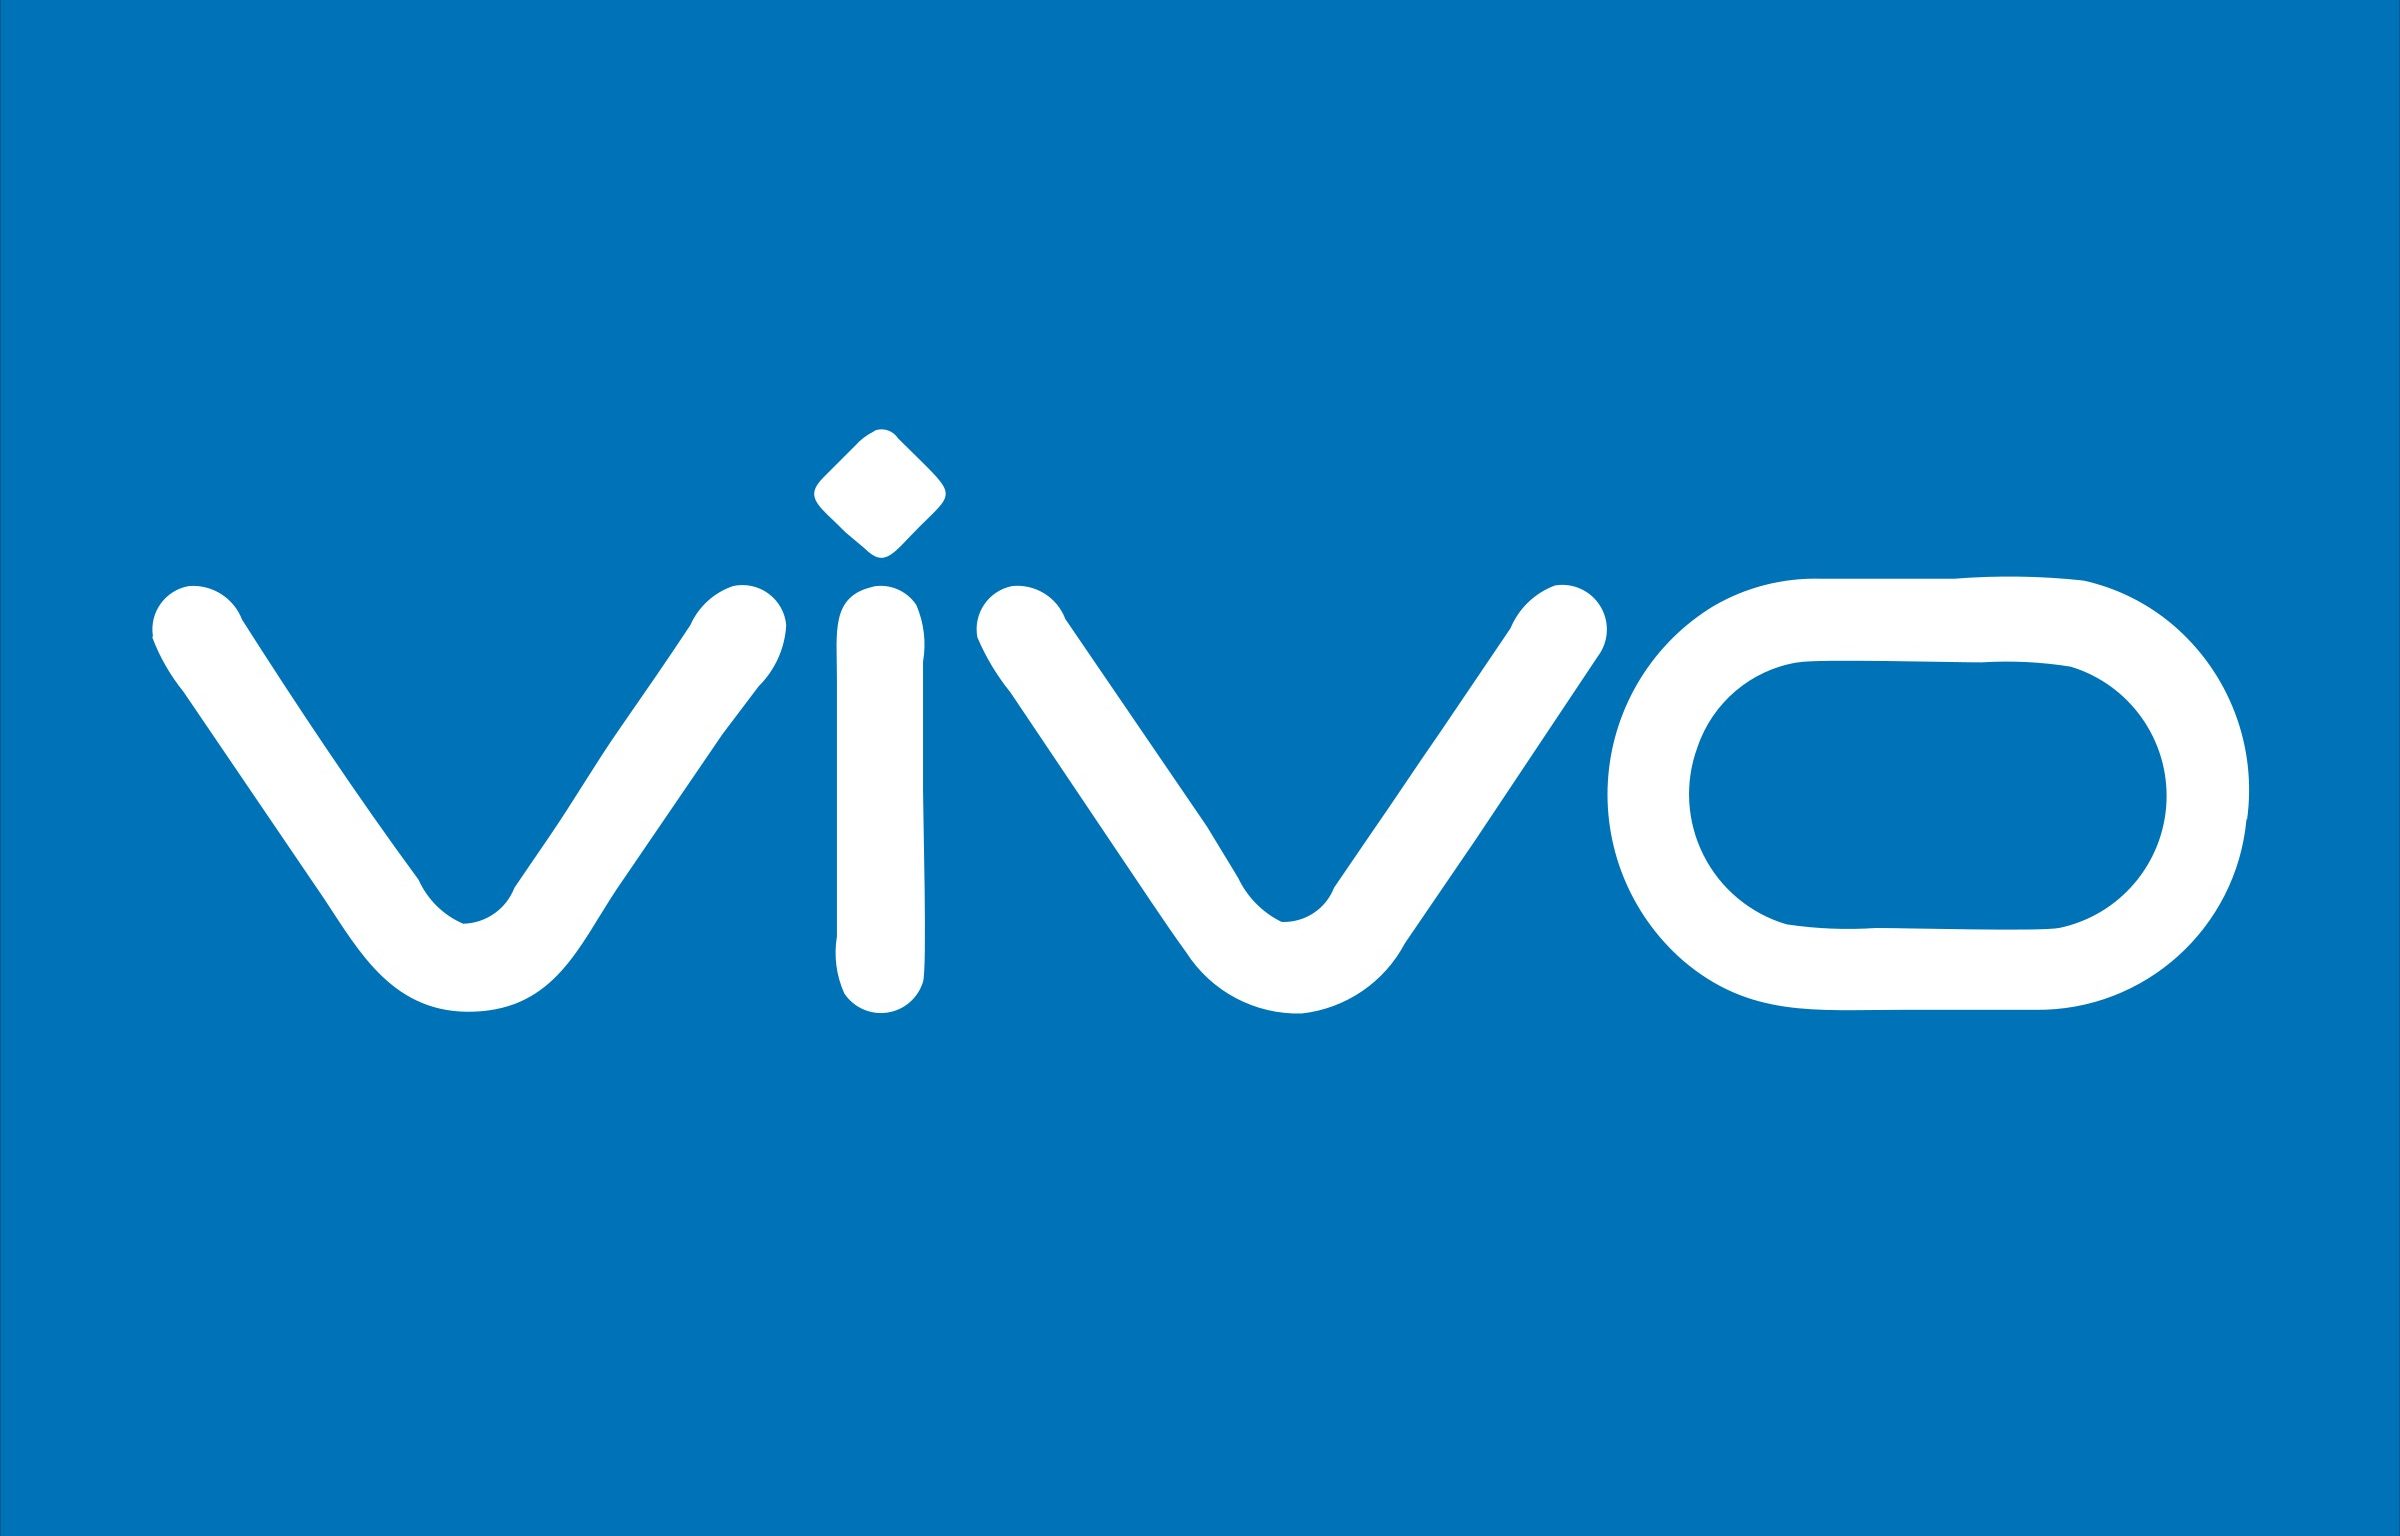 Vivo play. Vivo. Брэнд Виво. Логотип телефона Виво. Обои с логотипом vivo.